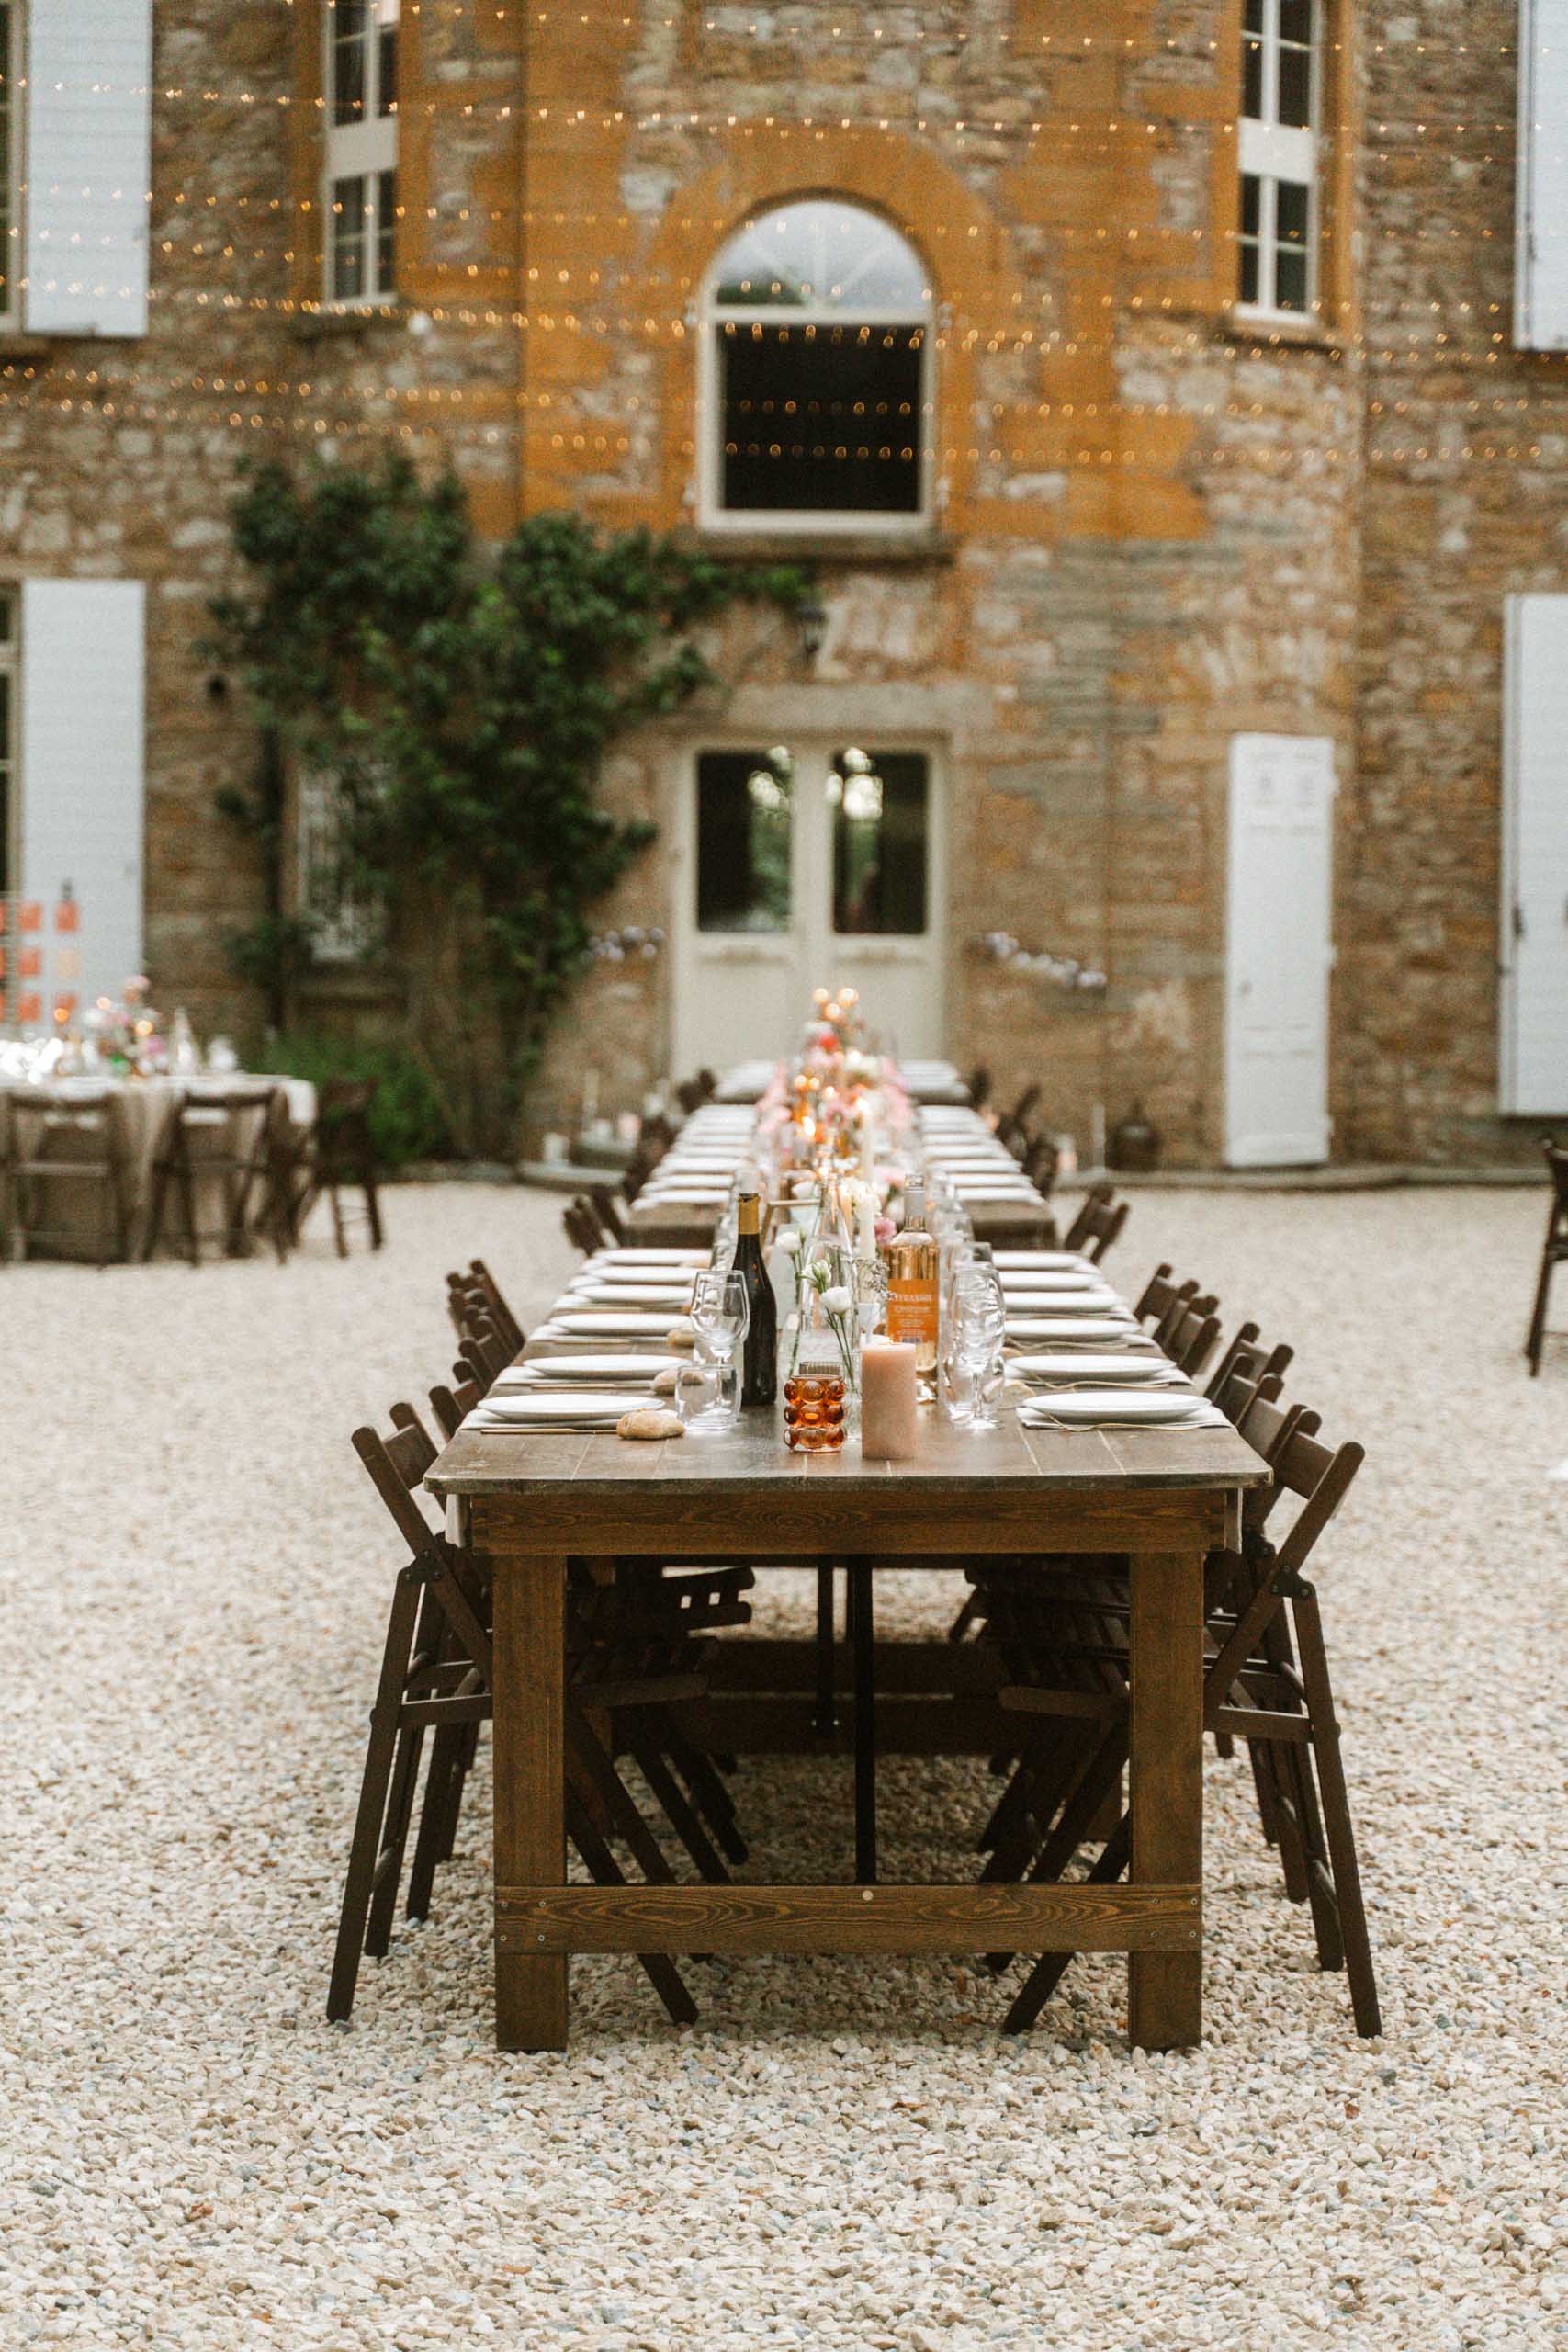 Vidéaste mariage beaujolais. Une longue table rectangle dans la cour intérieur d'un manoir.une table très bien dressée pour accueillir une réception de mariage.